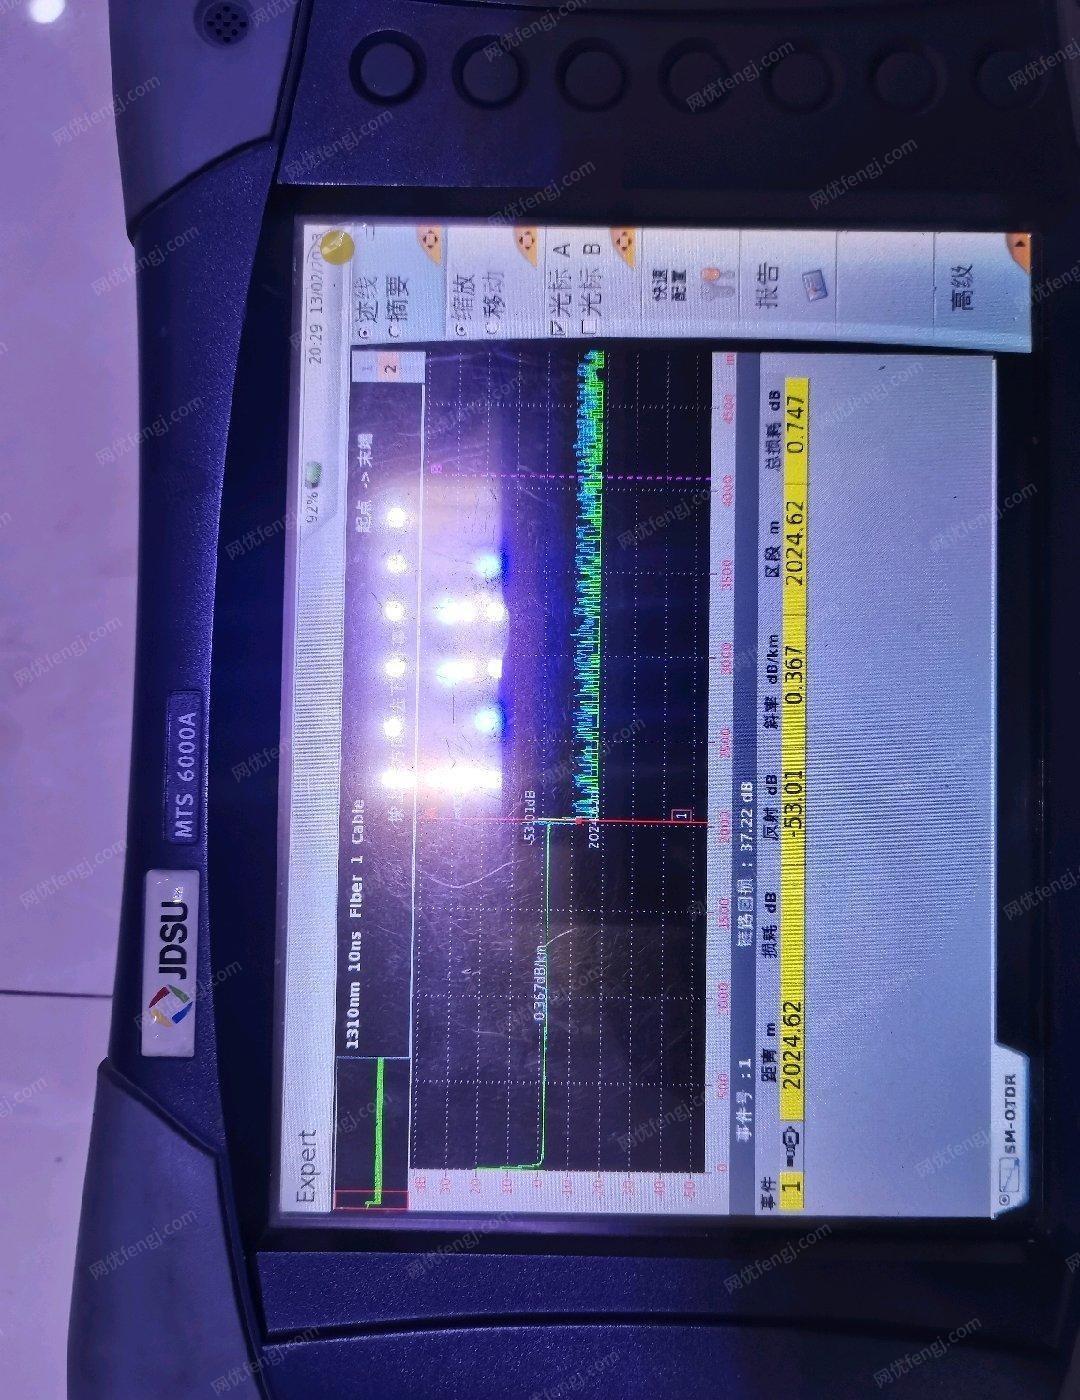 安徽安庆出售OTDR光时域反射仪JDSU6000